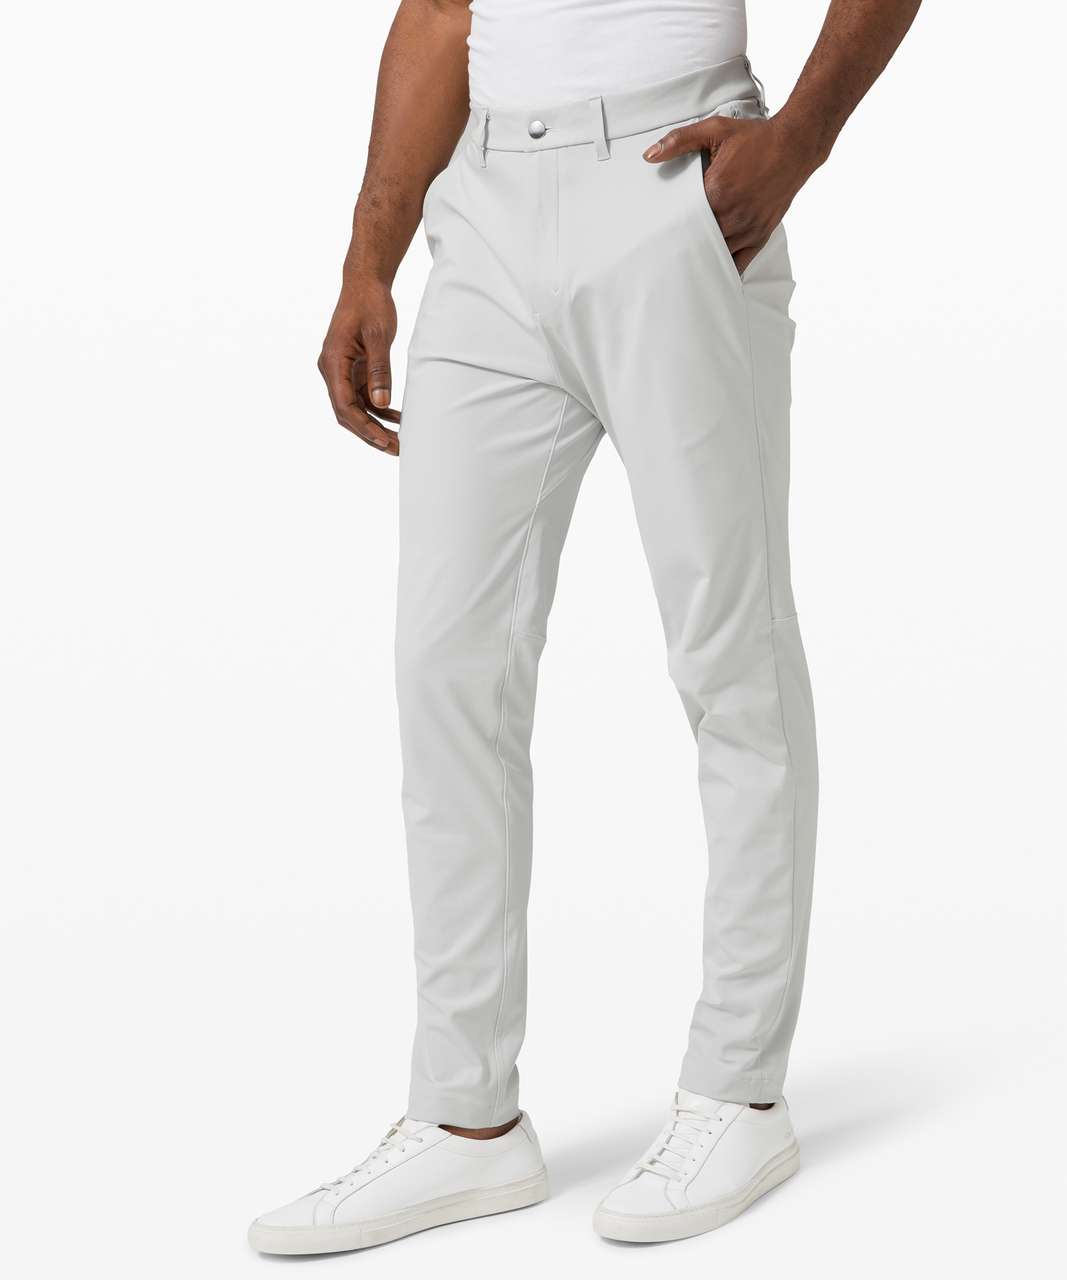 Lululemon athletica Commission Slim-Fit Pant 34 *Warpstreme, Men's  Trousers